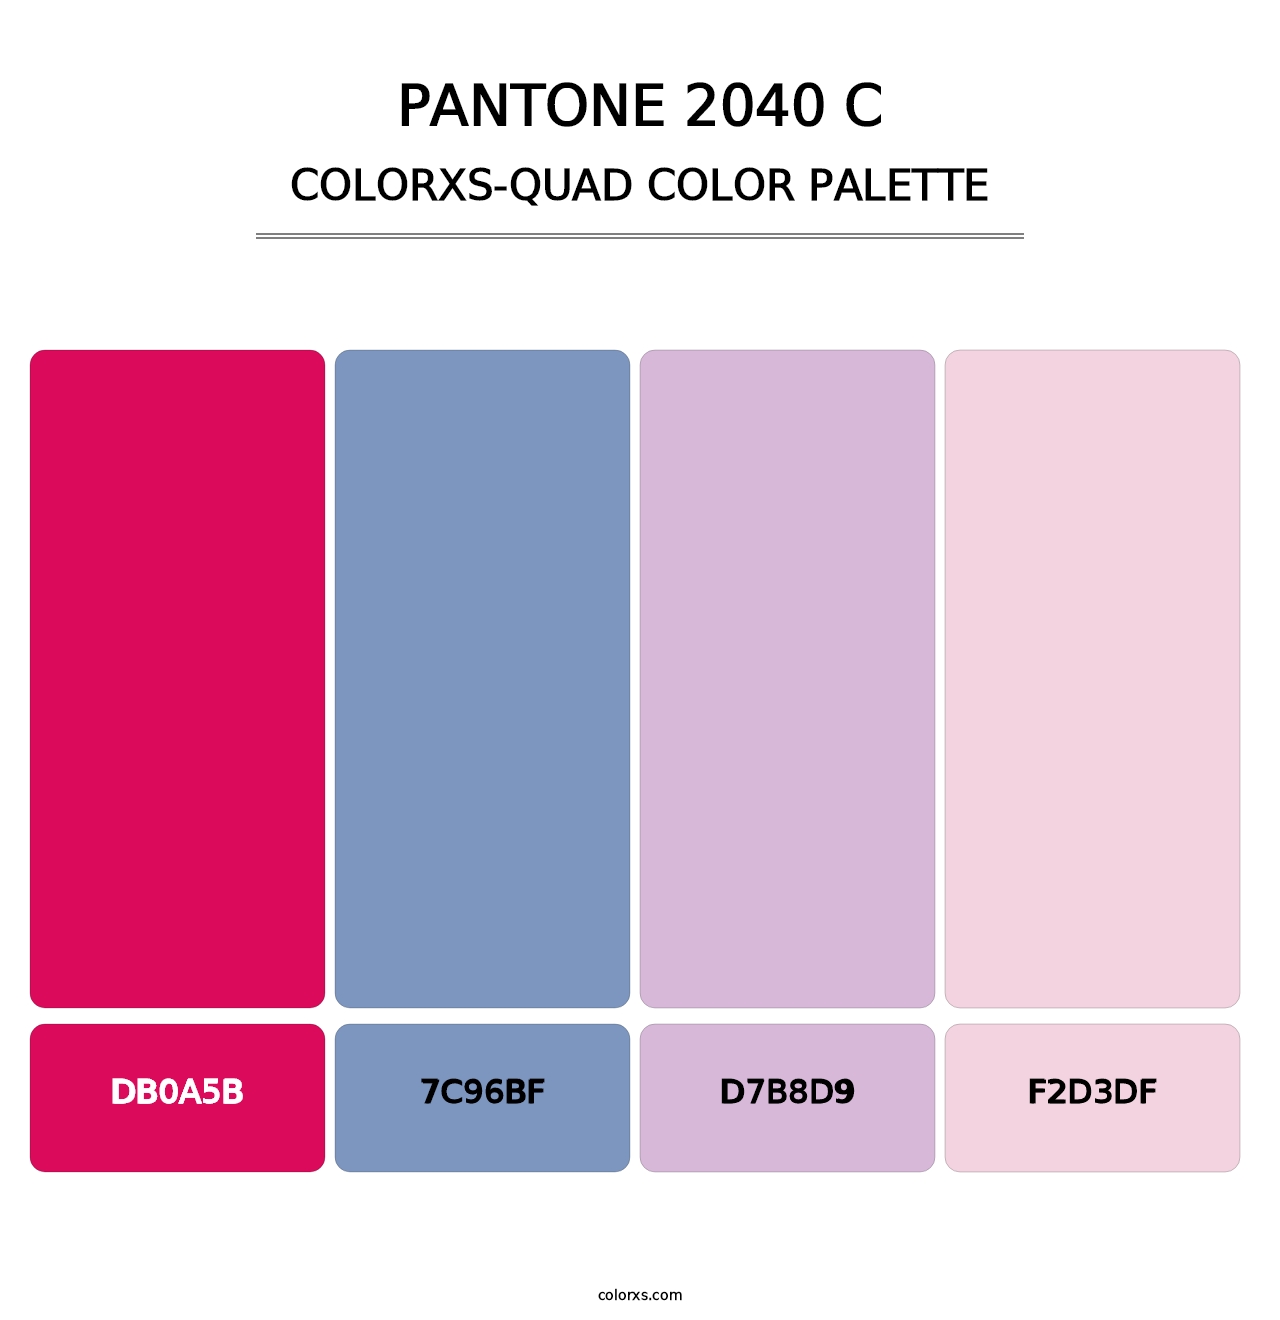 PANTONE 2040 C - Colorxs Quad Palette